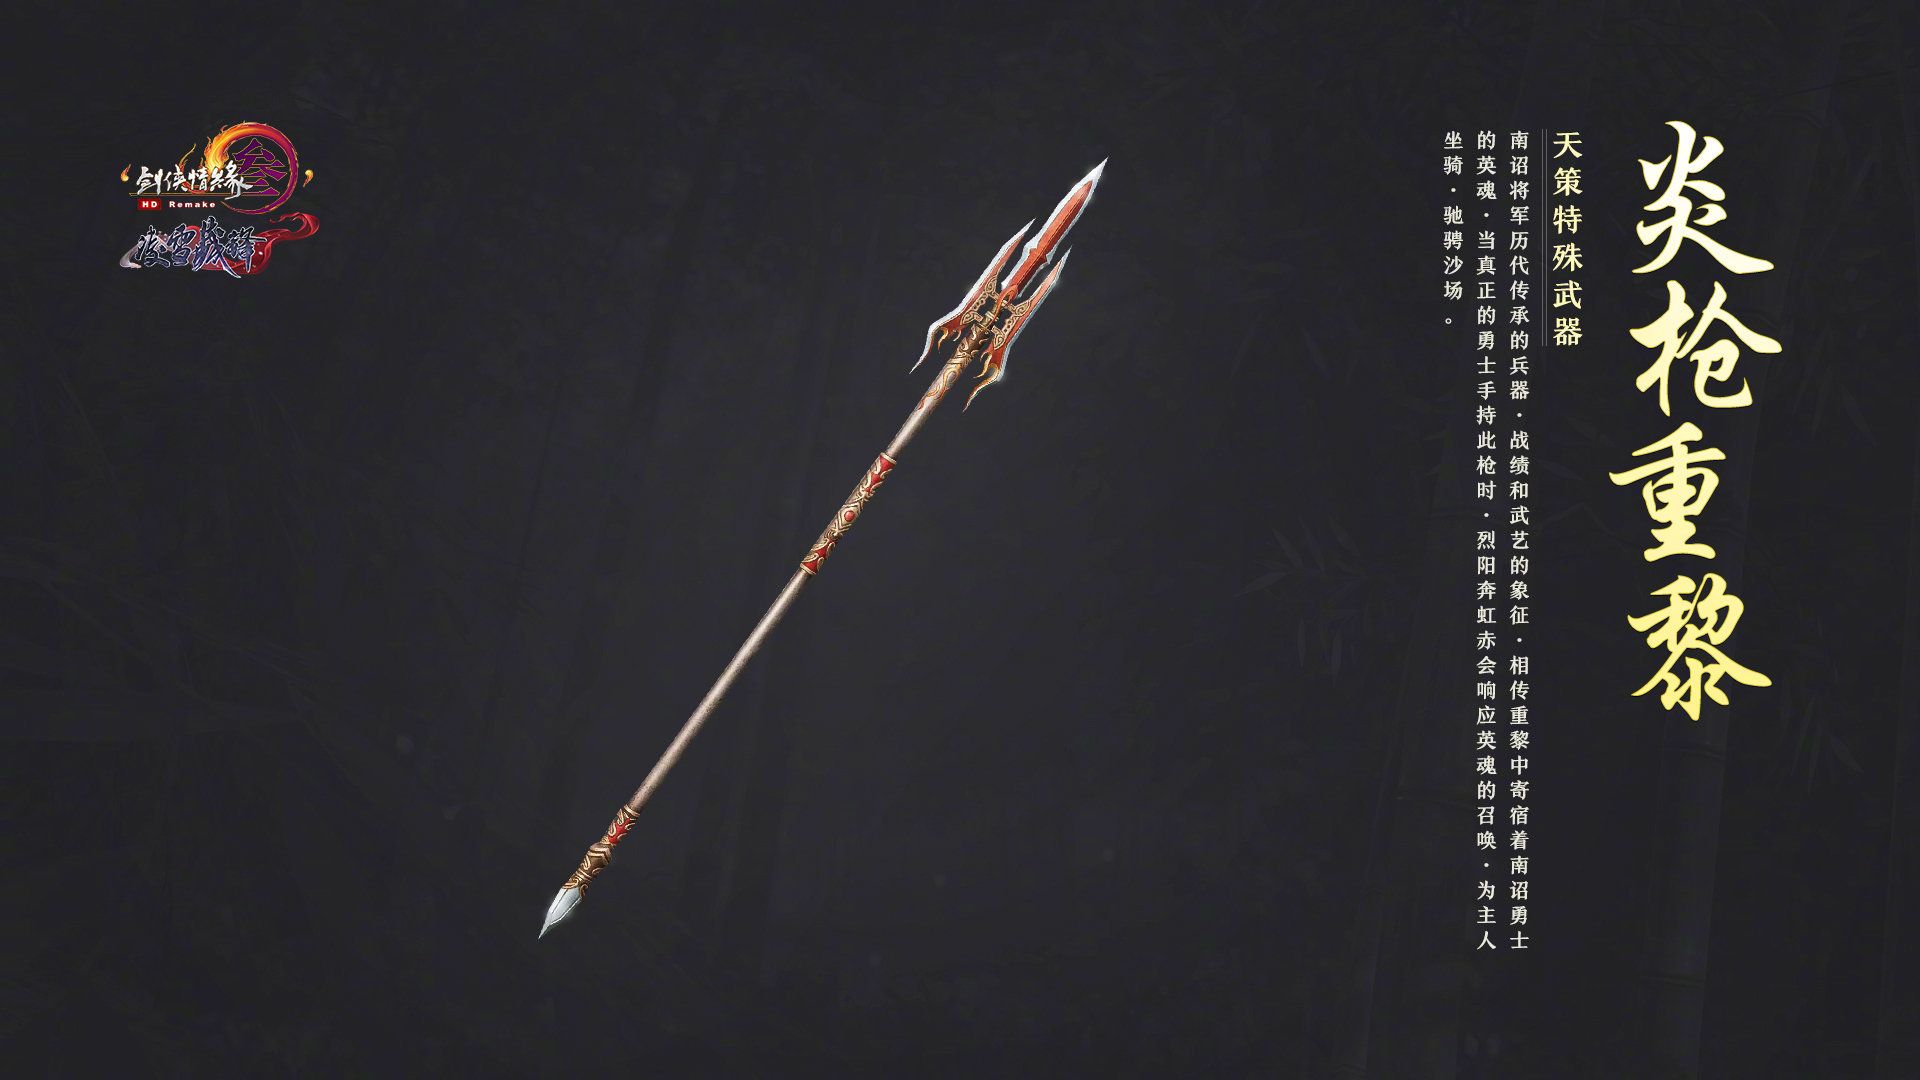 新职业斗士-剑灵官方网站-腾讯游戏